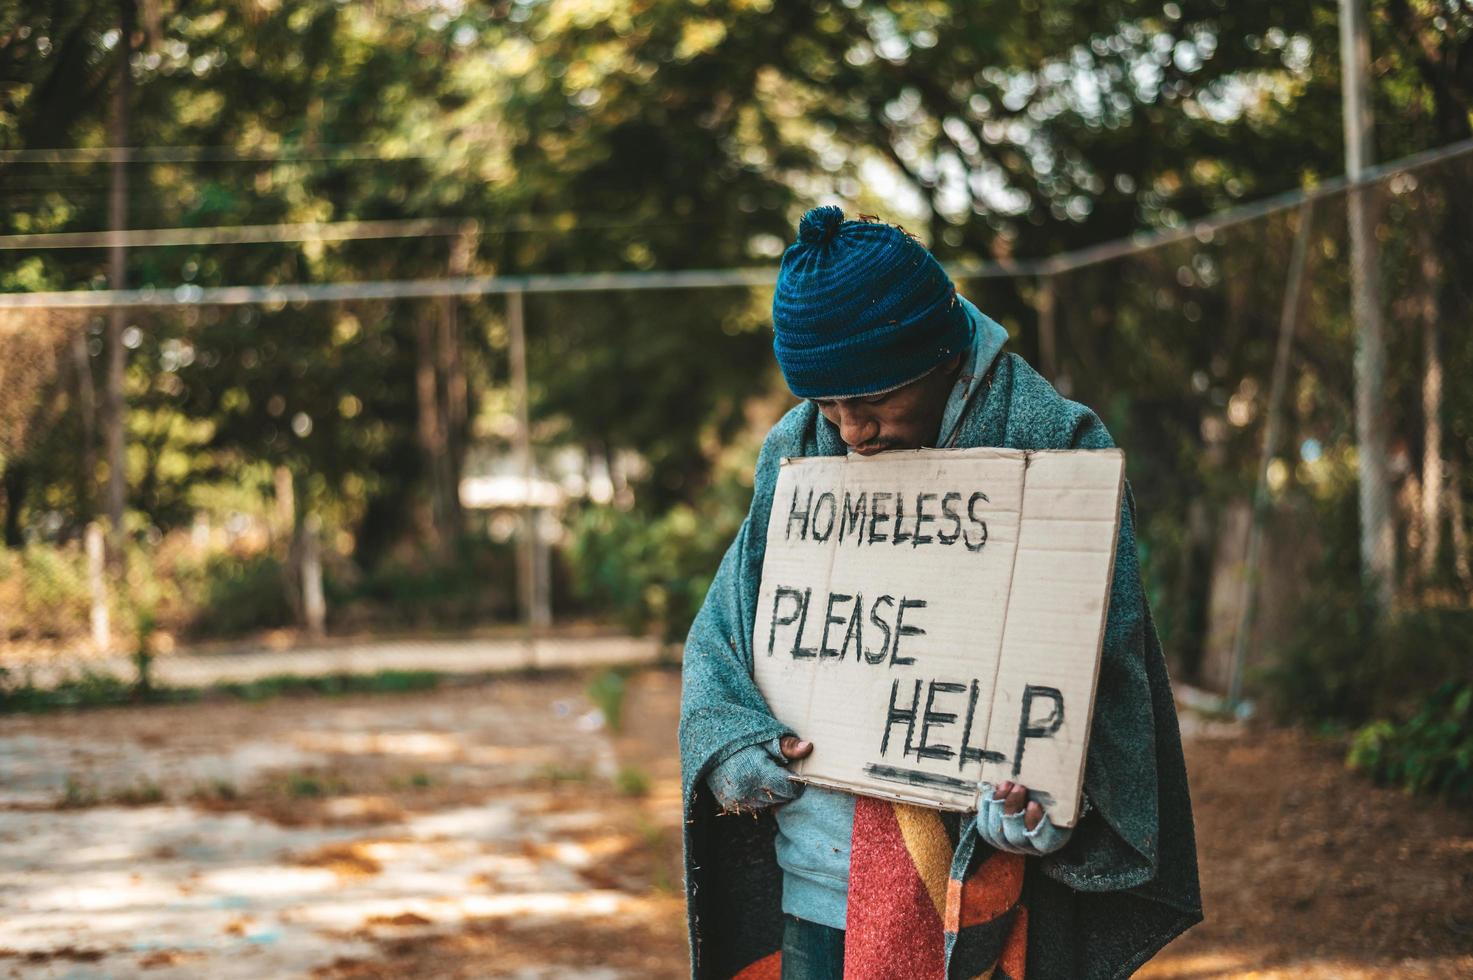 Le mendiant se tient dans la rue avec un signe d'aide photo